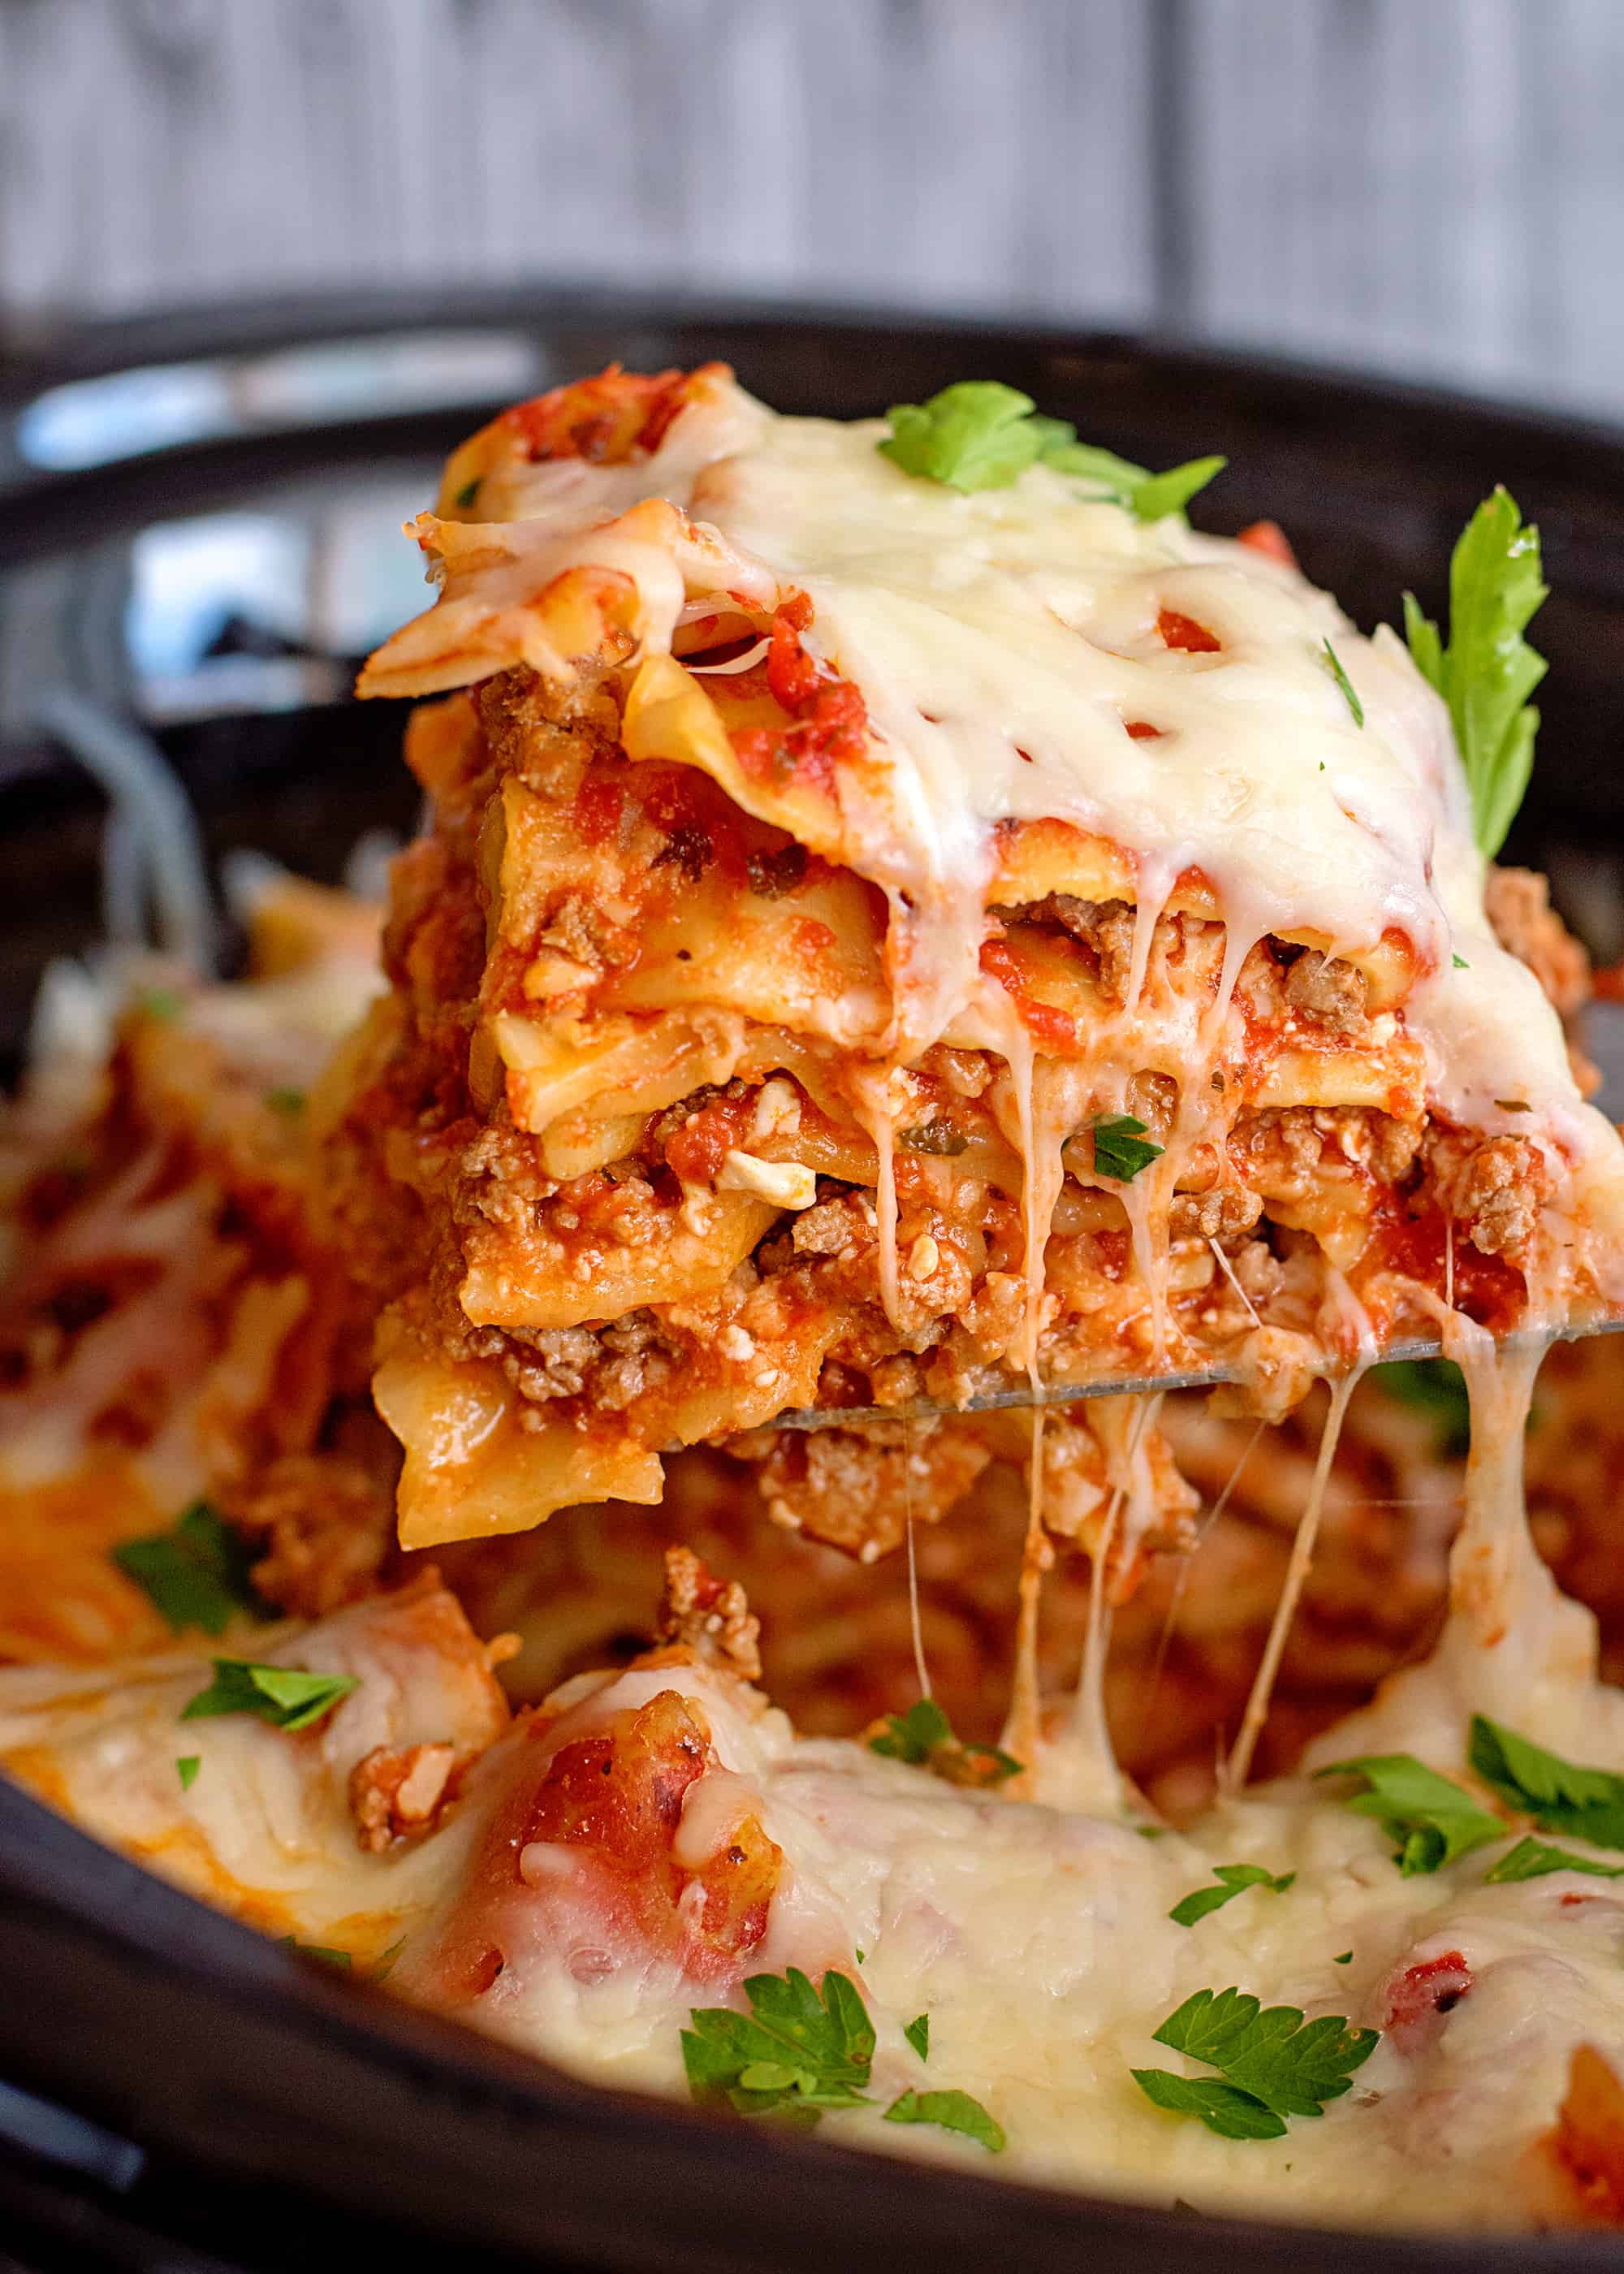 GORDON RAMSAY RECIPES | Crock Pot Lasagna – Southern Plate by Gordon Ramsay